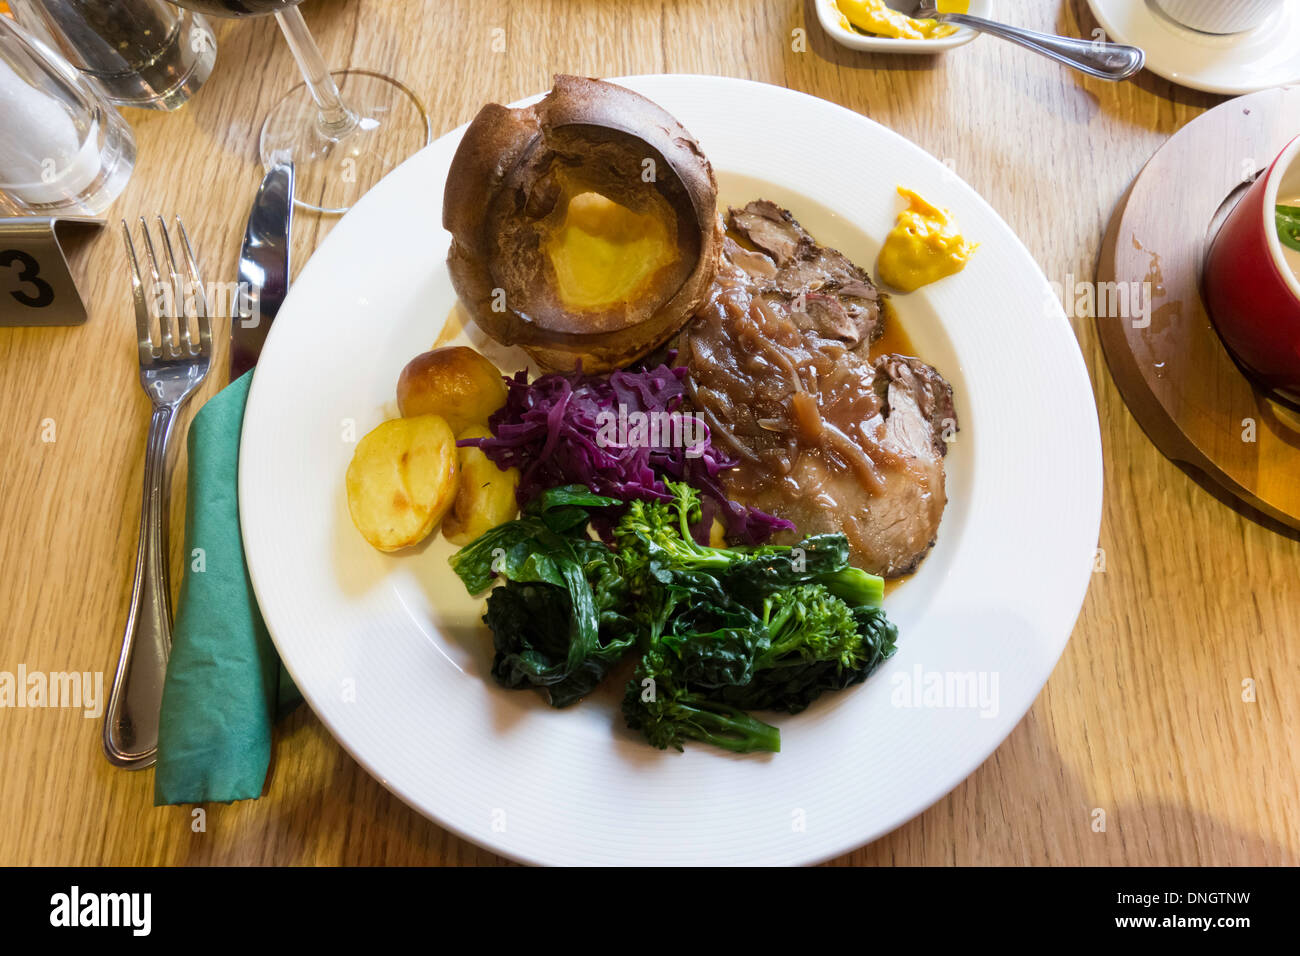 Mittagessen Sie Sonntag Hauptgerichte gebratenes Rinderfilet Rindfleisch Yorkshire Pudding Gemüse Sauce und Senf Stockfoto